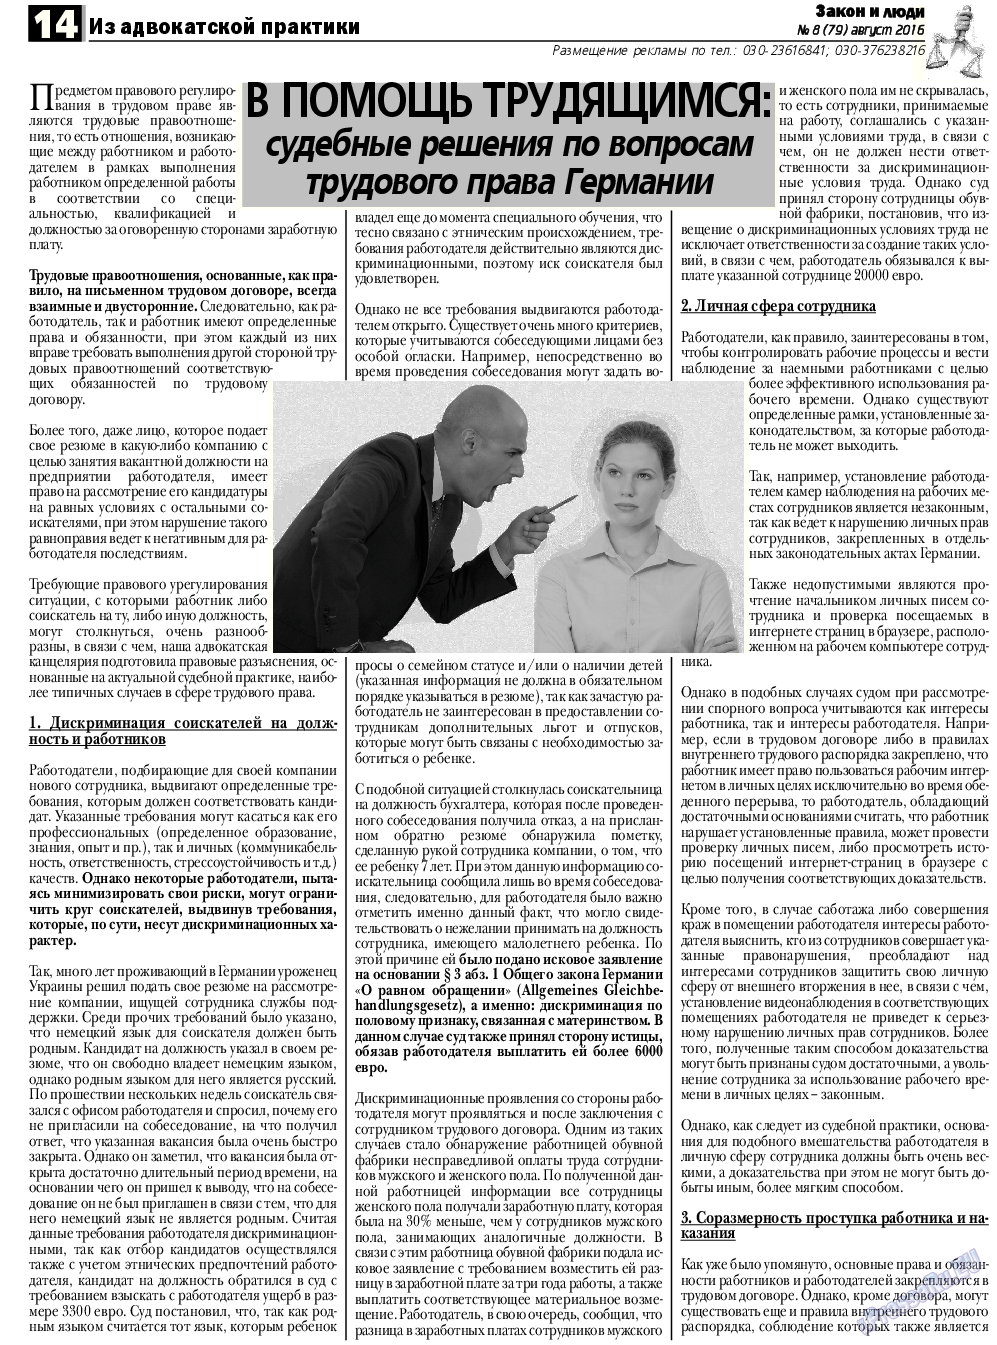 Закон и люди, газета. 2016 №8 стр.14